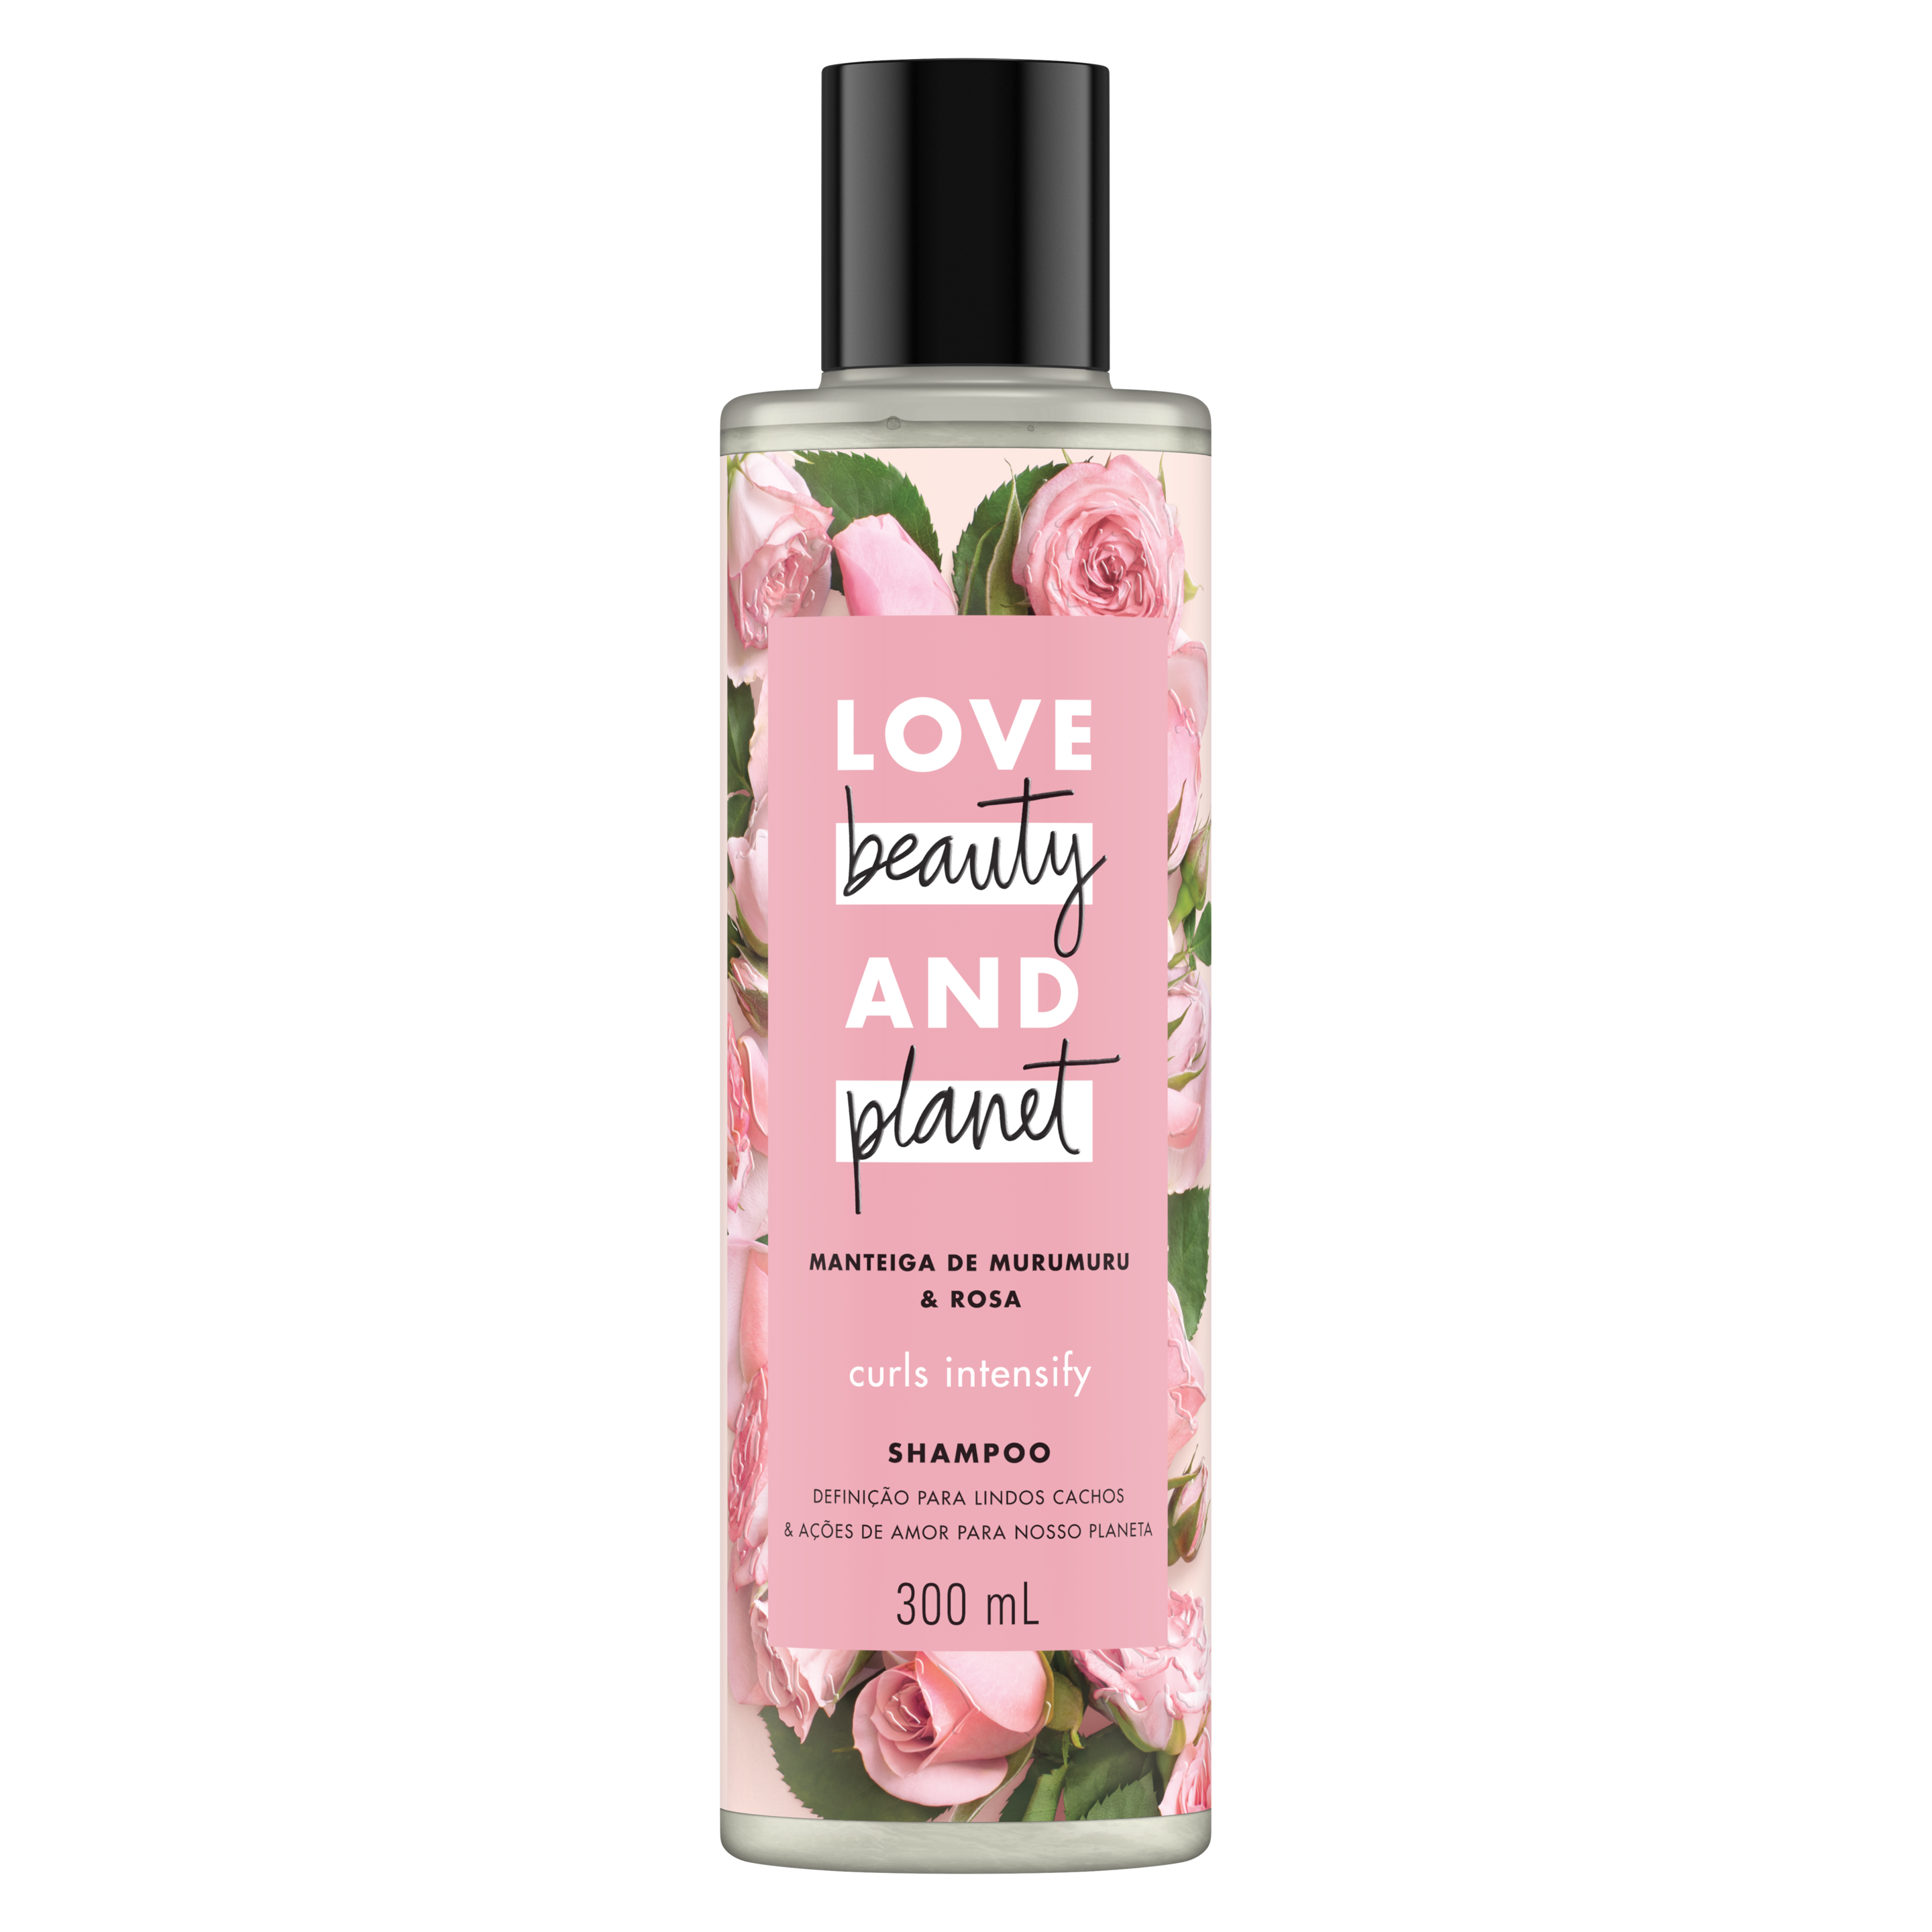 Frente da embalagem do shampoo Love Beauty and Planet manteiga de murumuru & rosa 300 ml